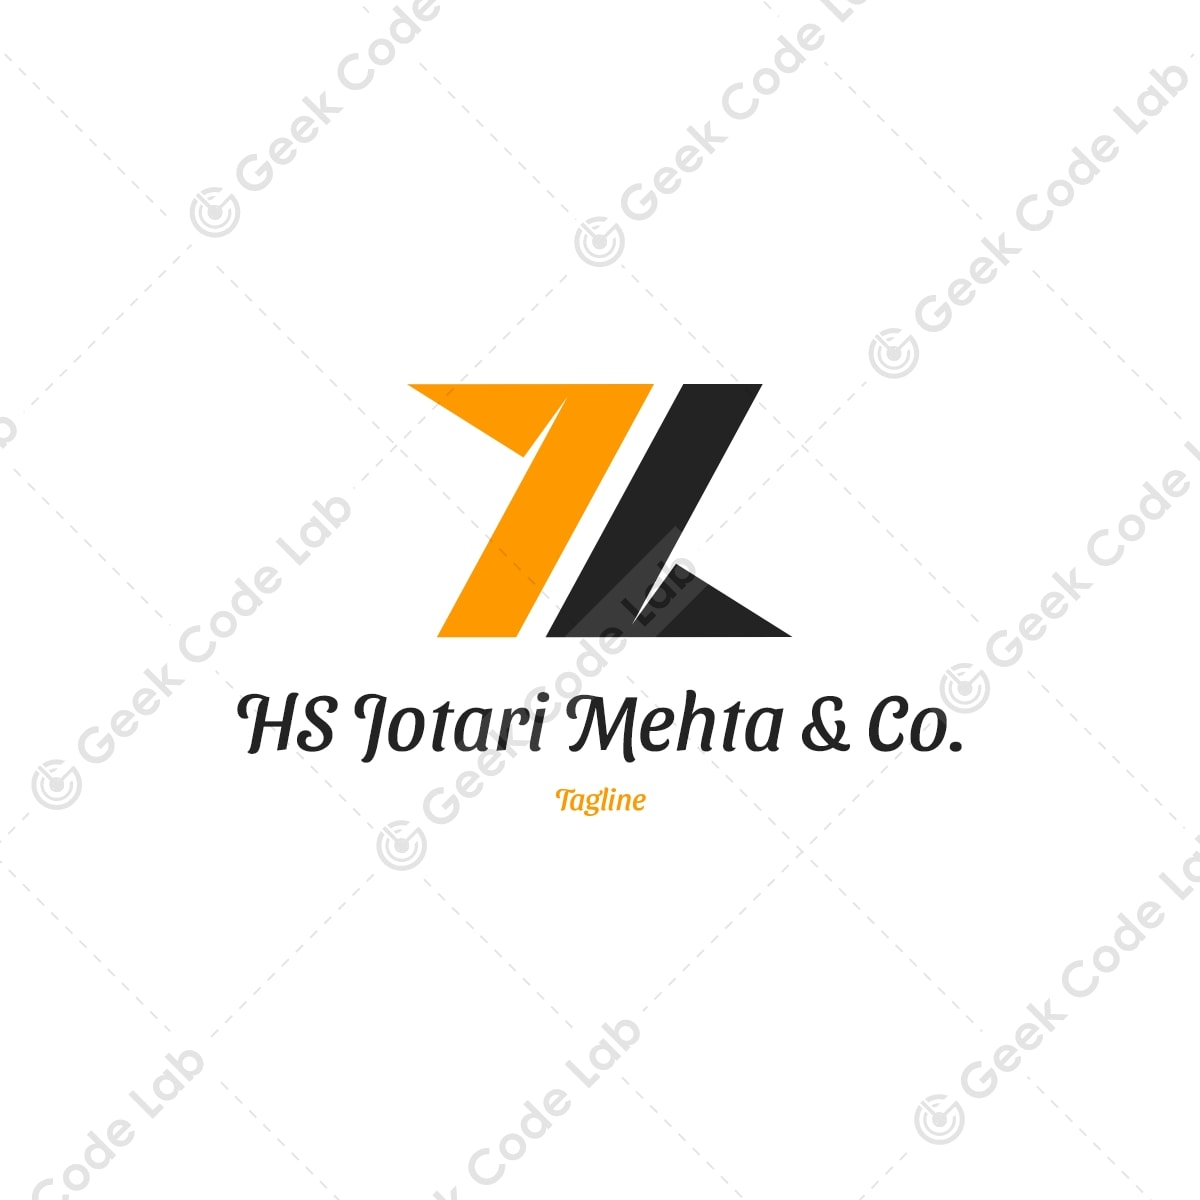 HS Jotari Mehta & Co